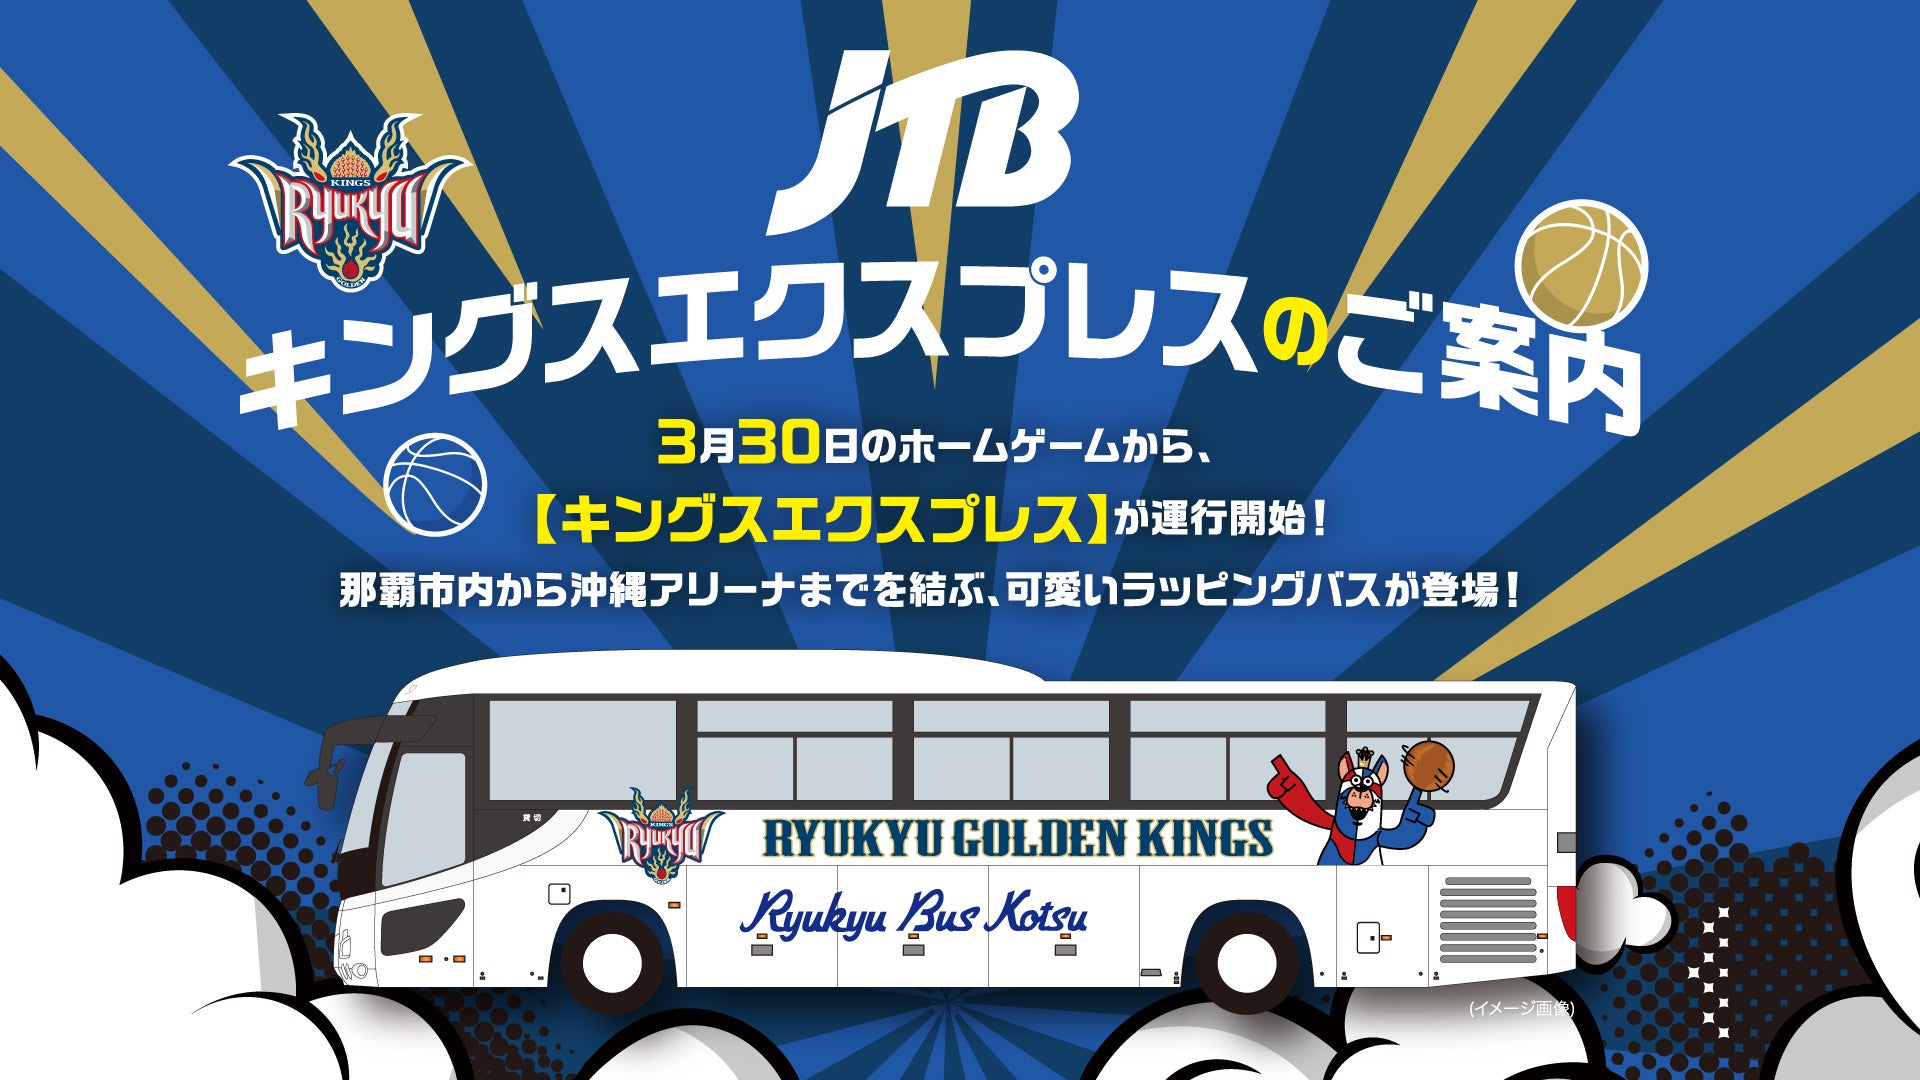 JTB沖縄「キングスエクスプレス」バス運行開始のお知らせ